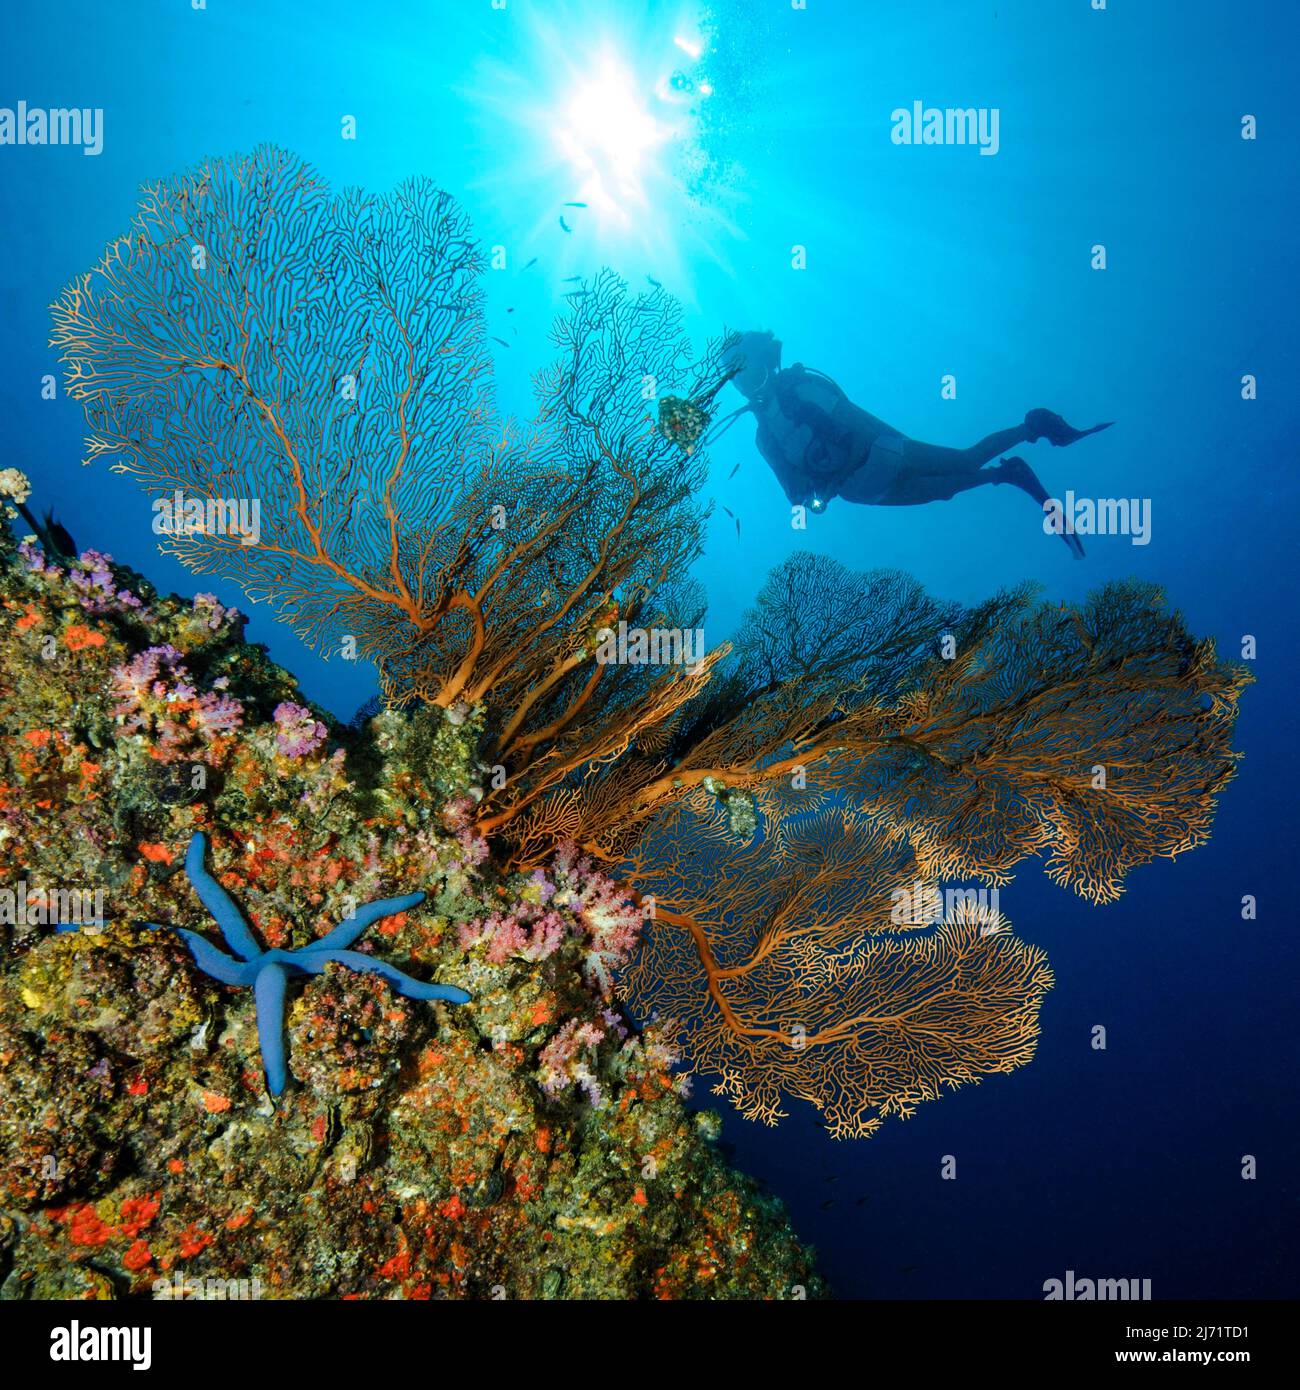 Taucherin blickt auf Faecherkoralle (Annella mollis), Hornkoralle, Gorgonie, im Vordergrund Blauer Seestern (Linckia laevigata) auf Korallenriff Stock Photo